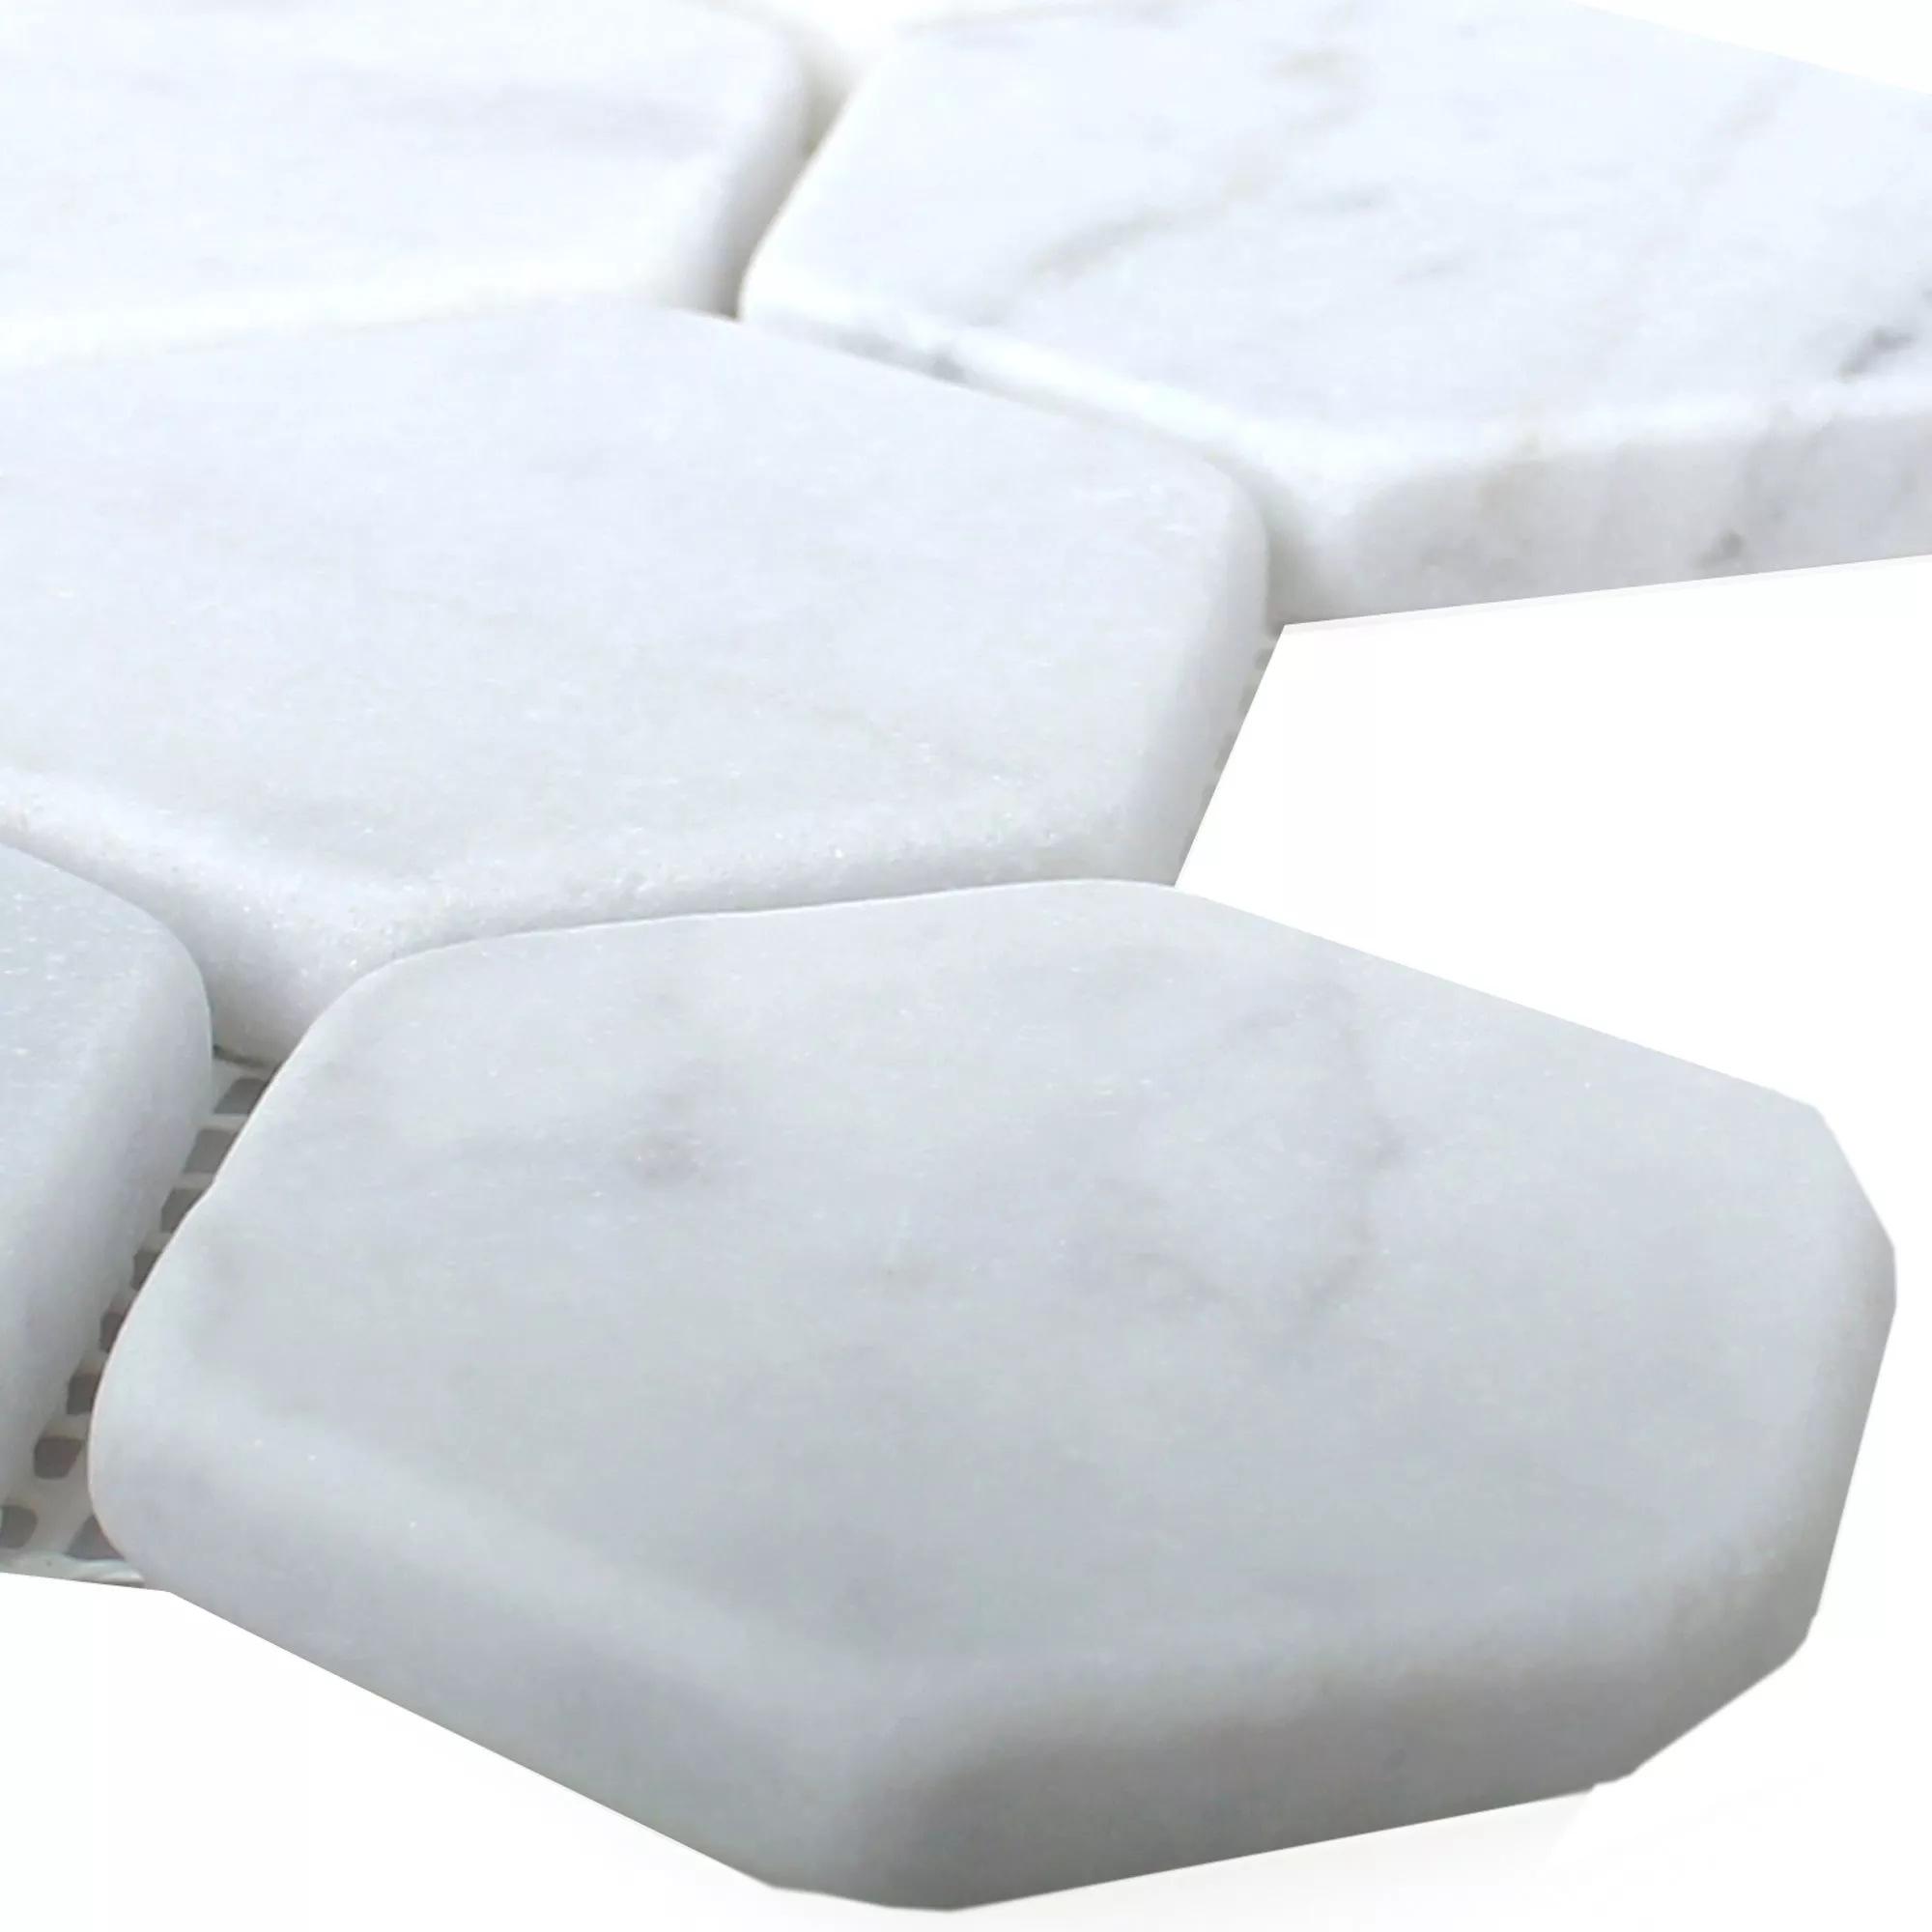 Mosaïque Carrelage Marbre Wutach Hexagone Blanc Carrara